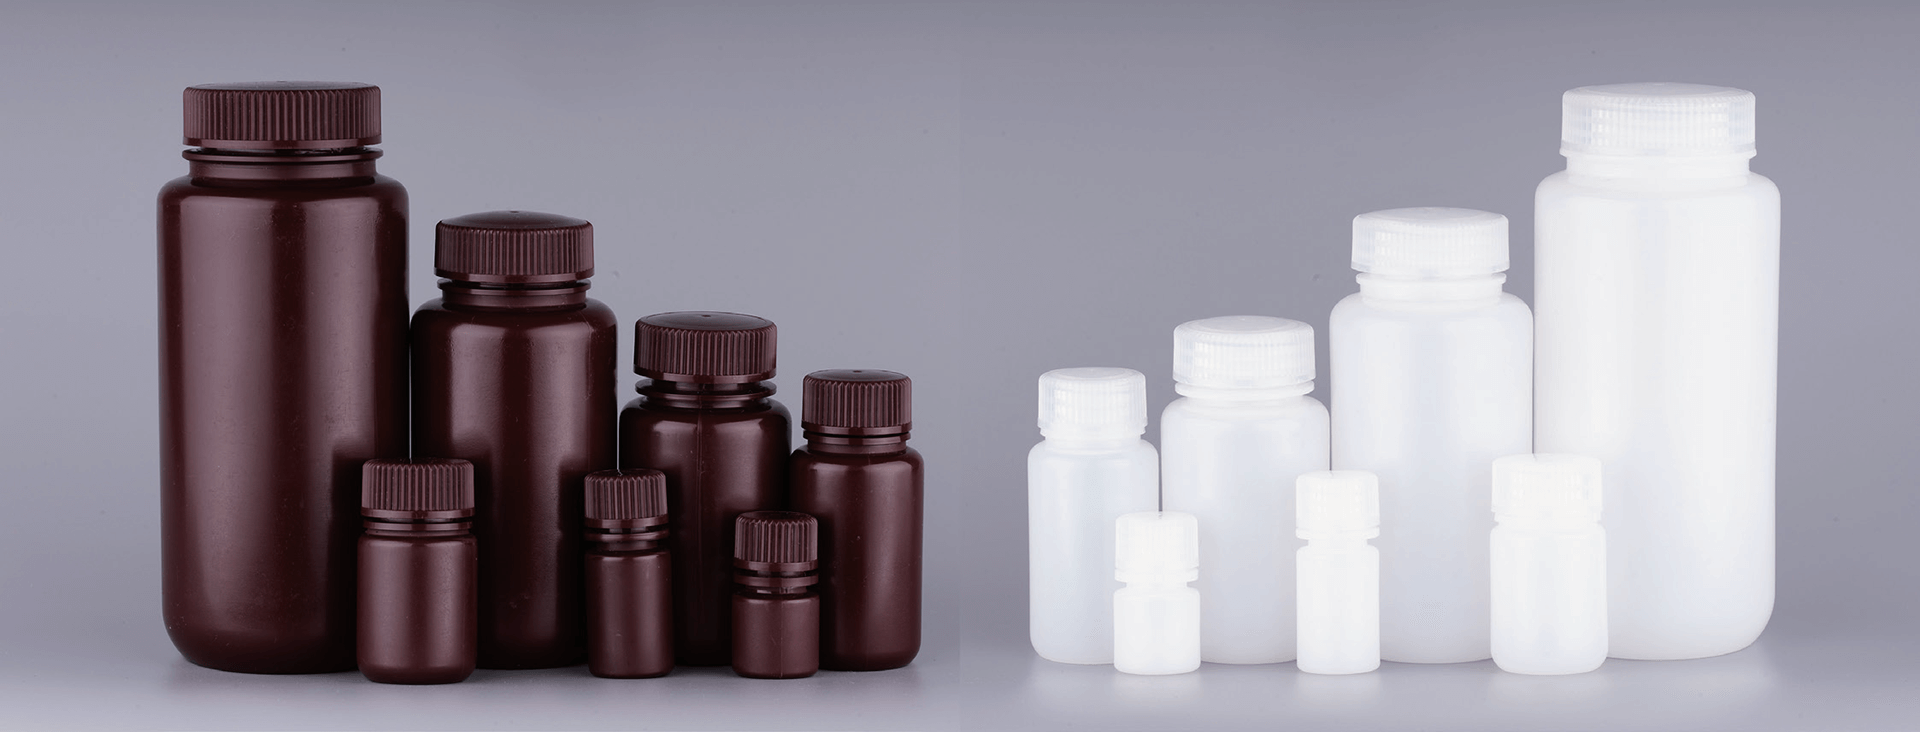 زجاجات الكاشف البلاستيكية عالية الجودة من Suzhou Ace Biomedical